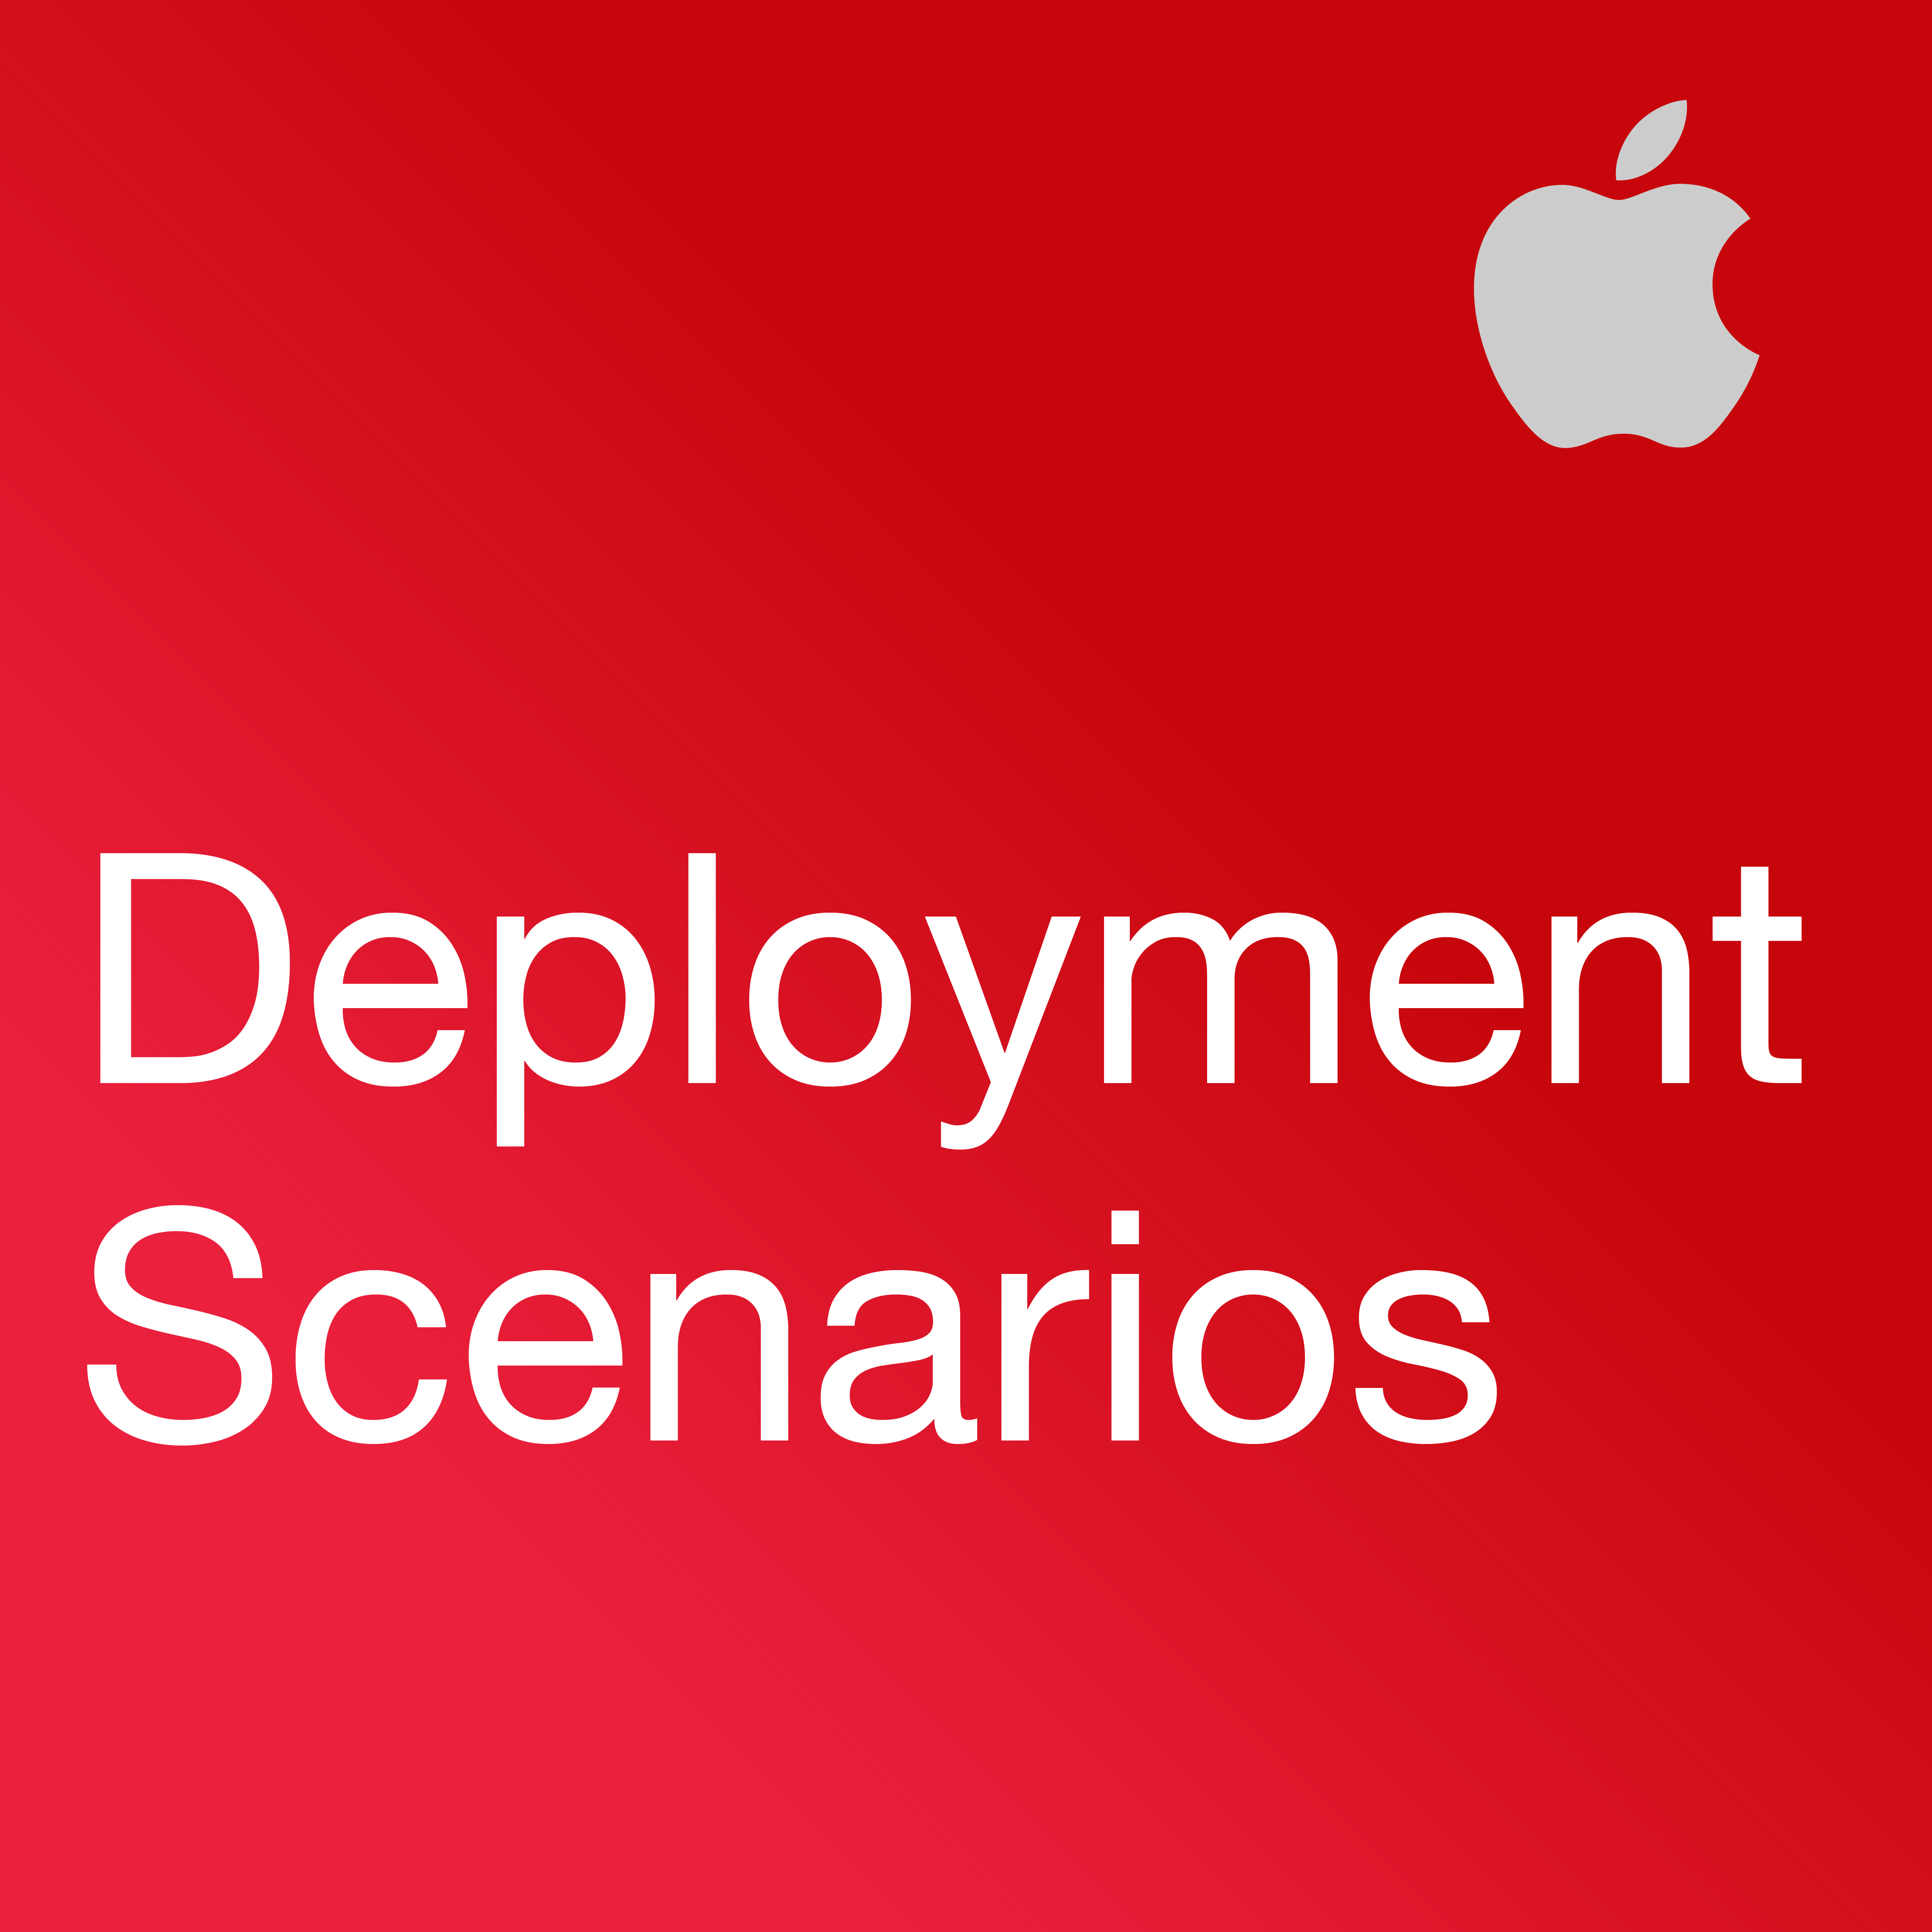 iPad in Business: Deployment Scenarios